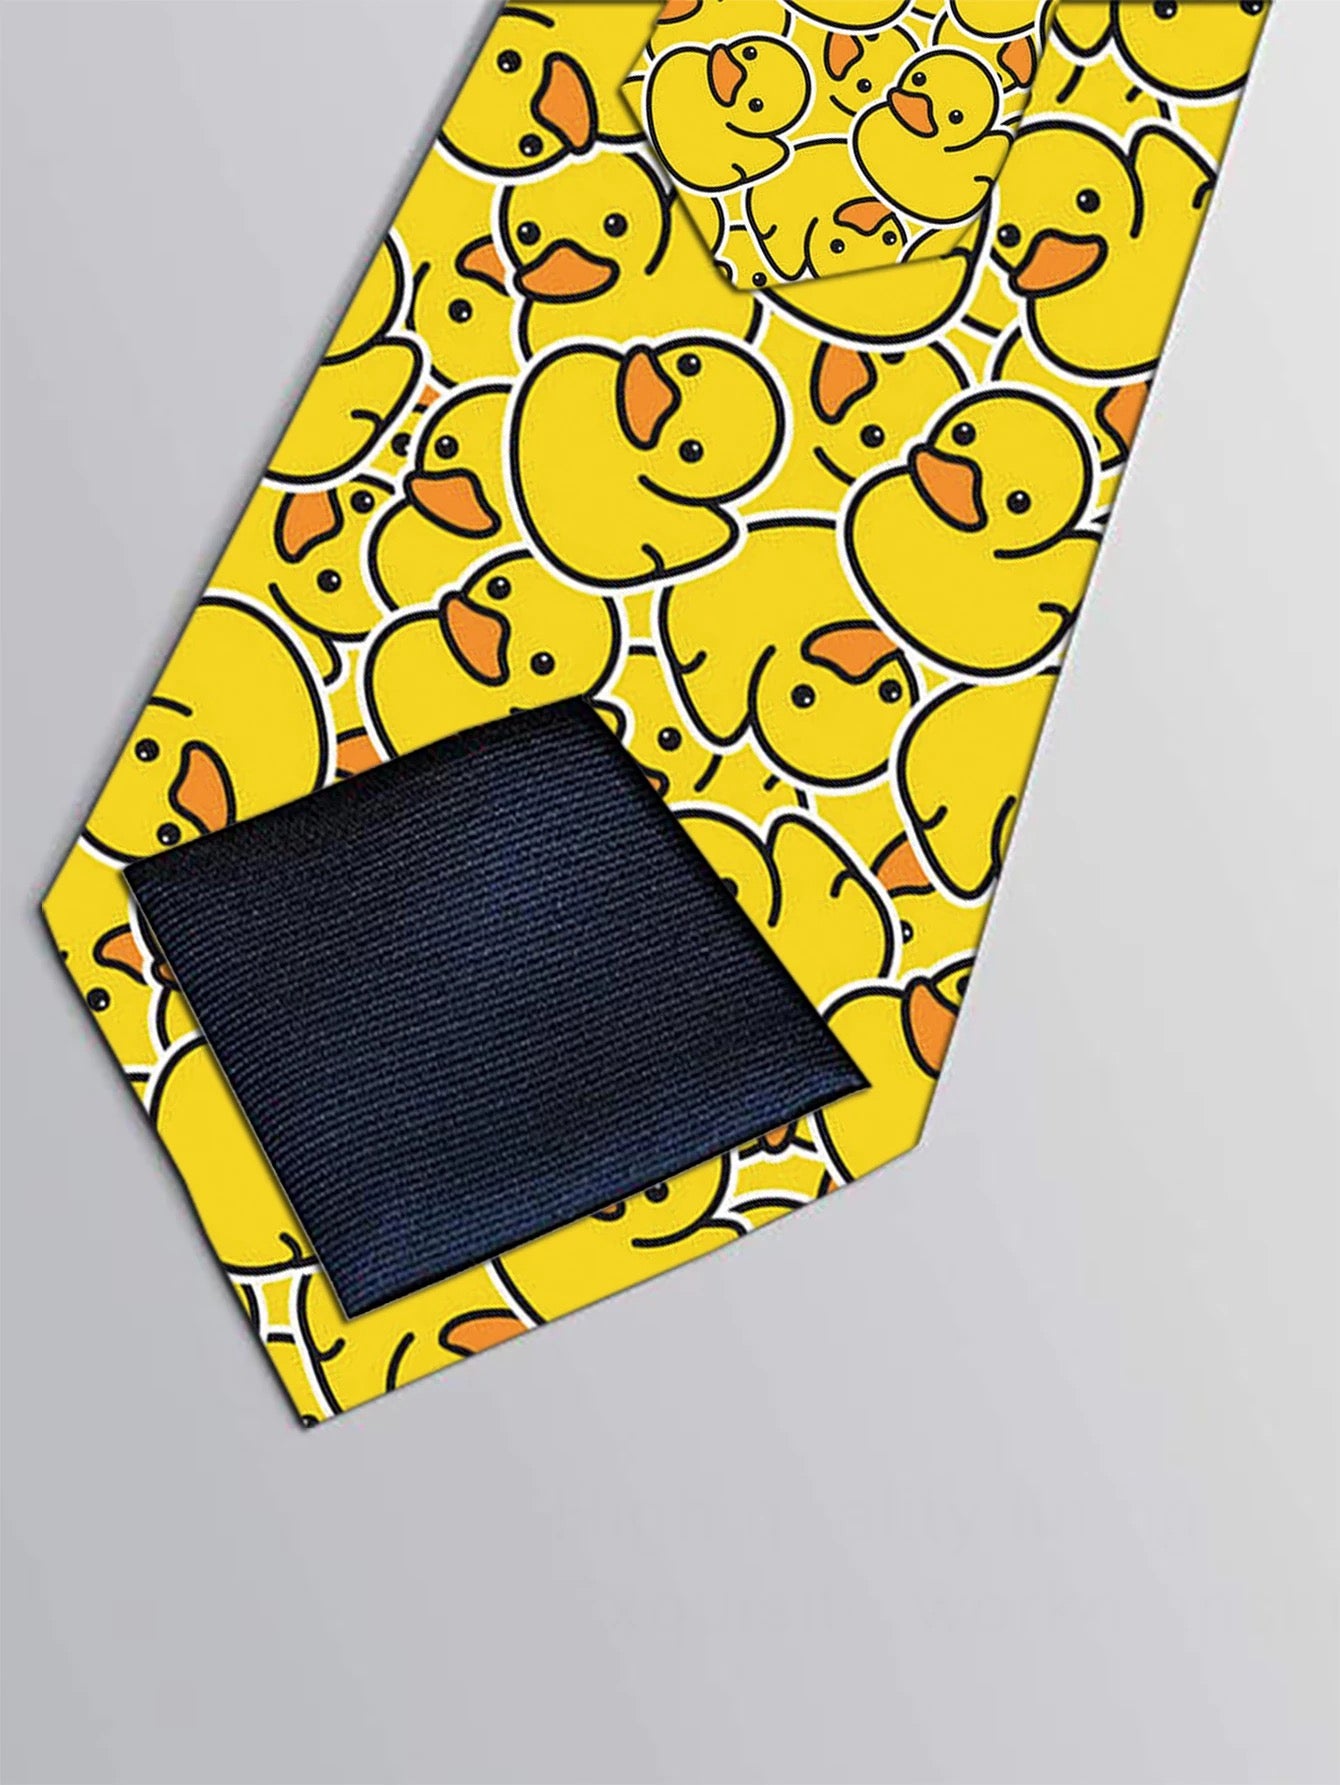 Gelbe Enten-Krawatte